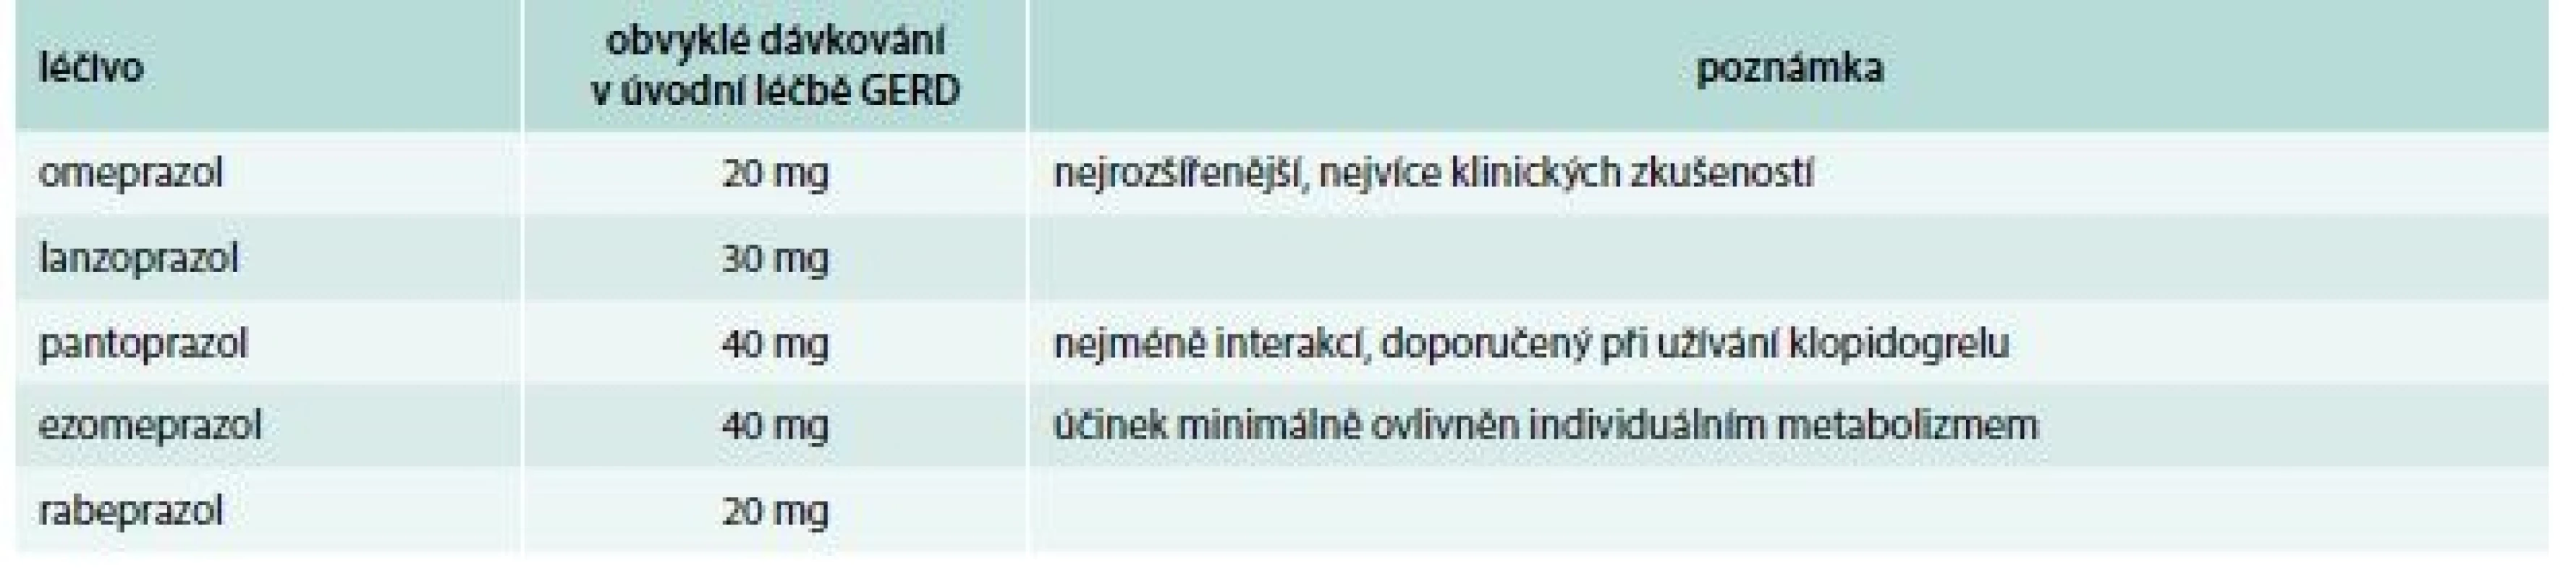 Inhibitory protonové pumpy dostupné v České republice